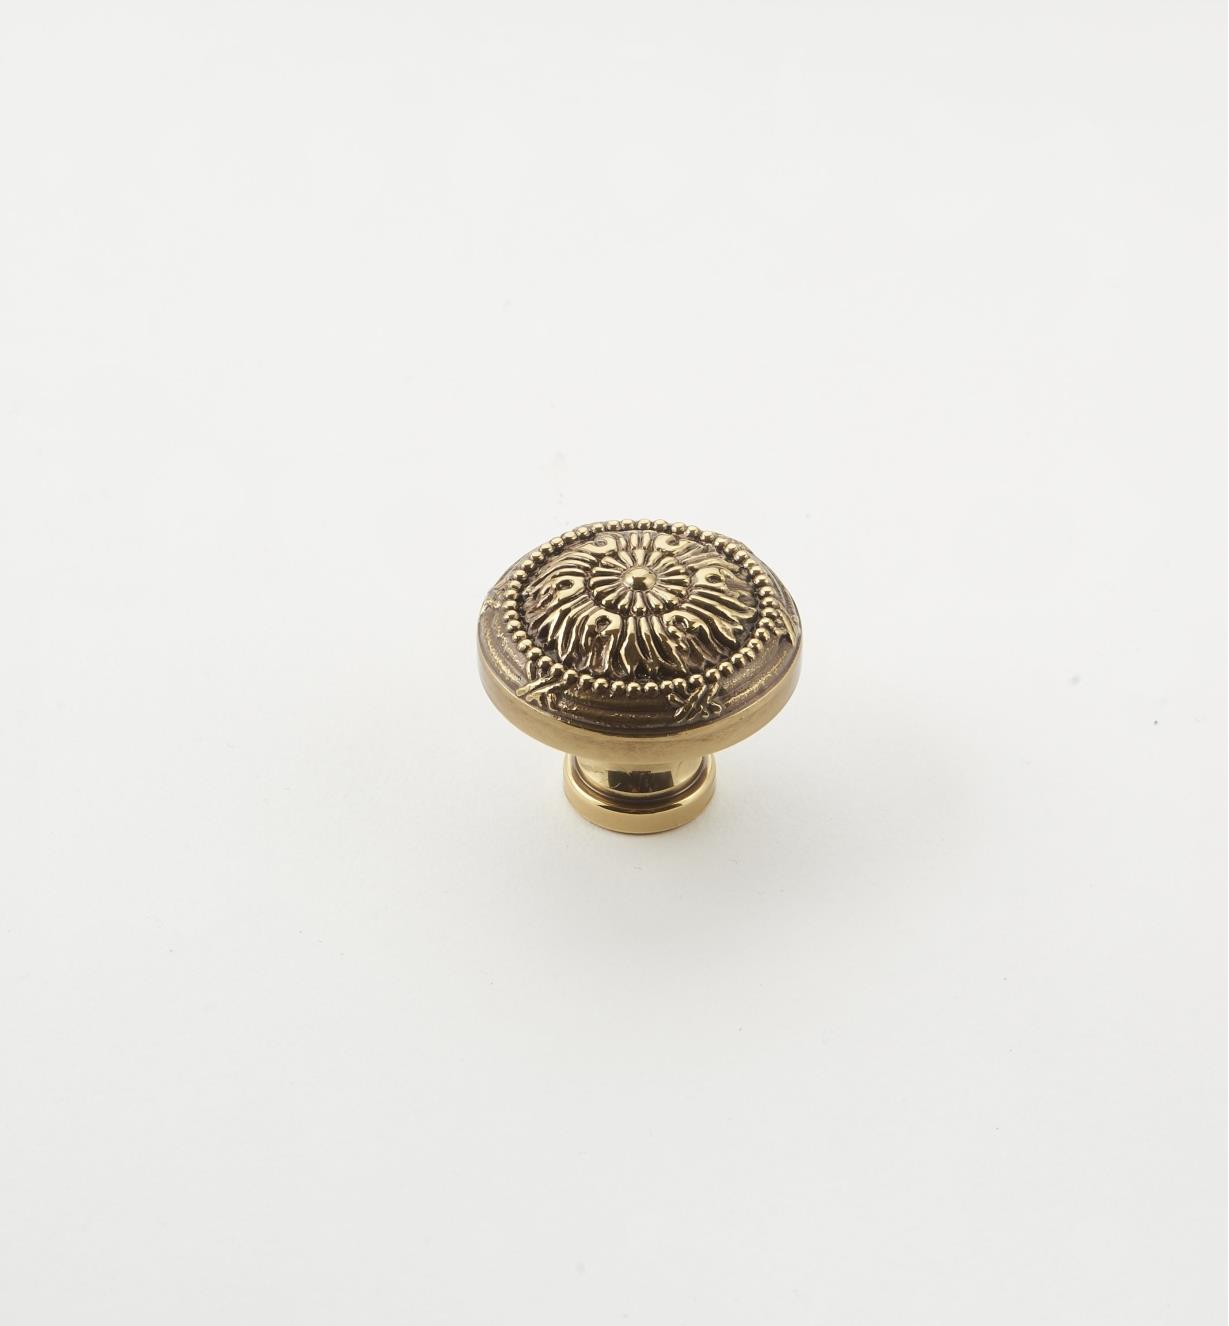 02G0110 - 1 1/4" x 1 1/16" Forged Brass Knob